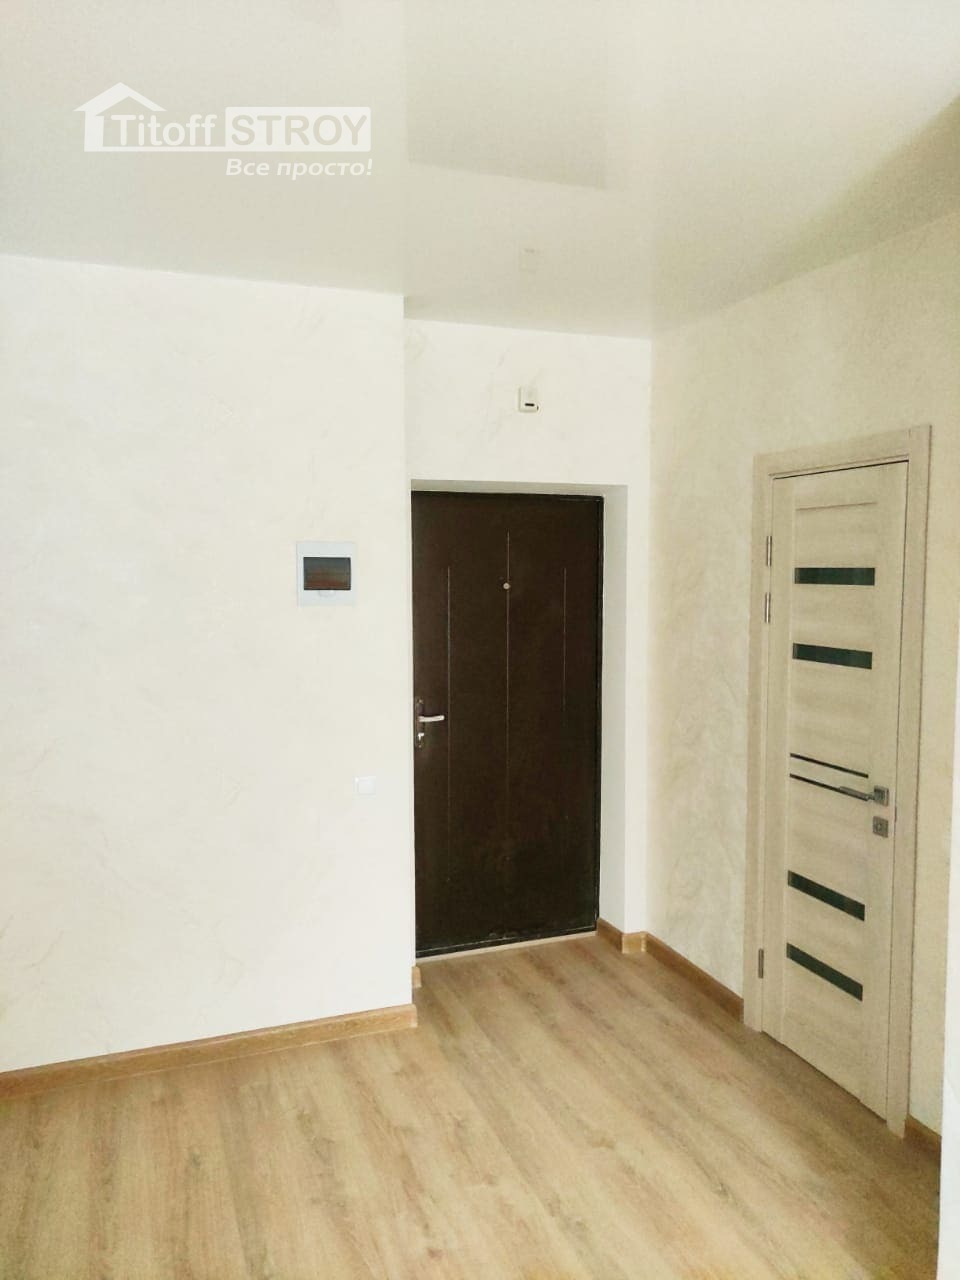 Финишная отделка стен и пола в квартире